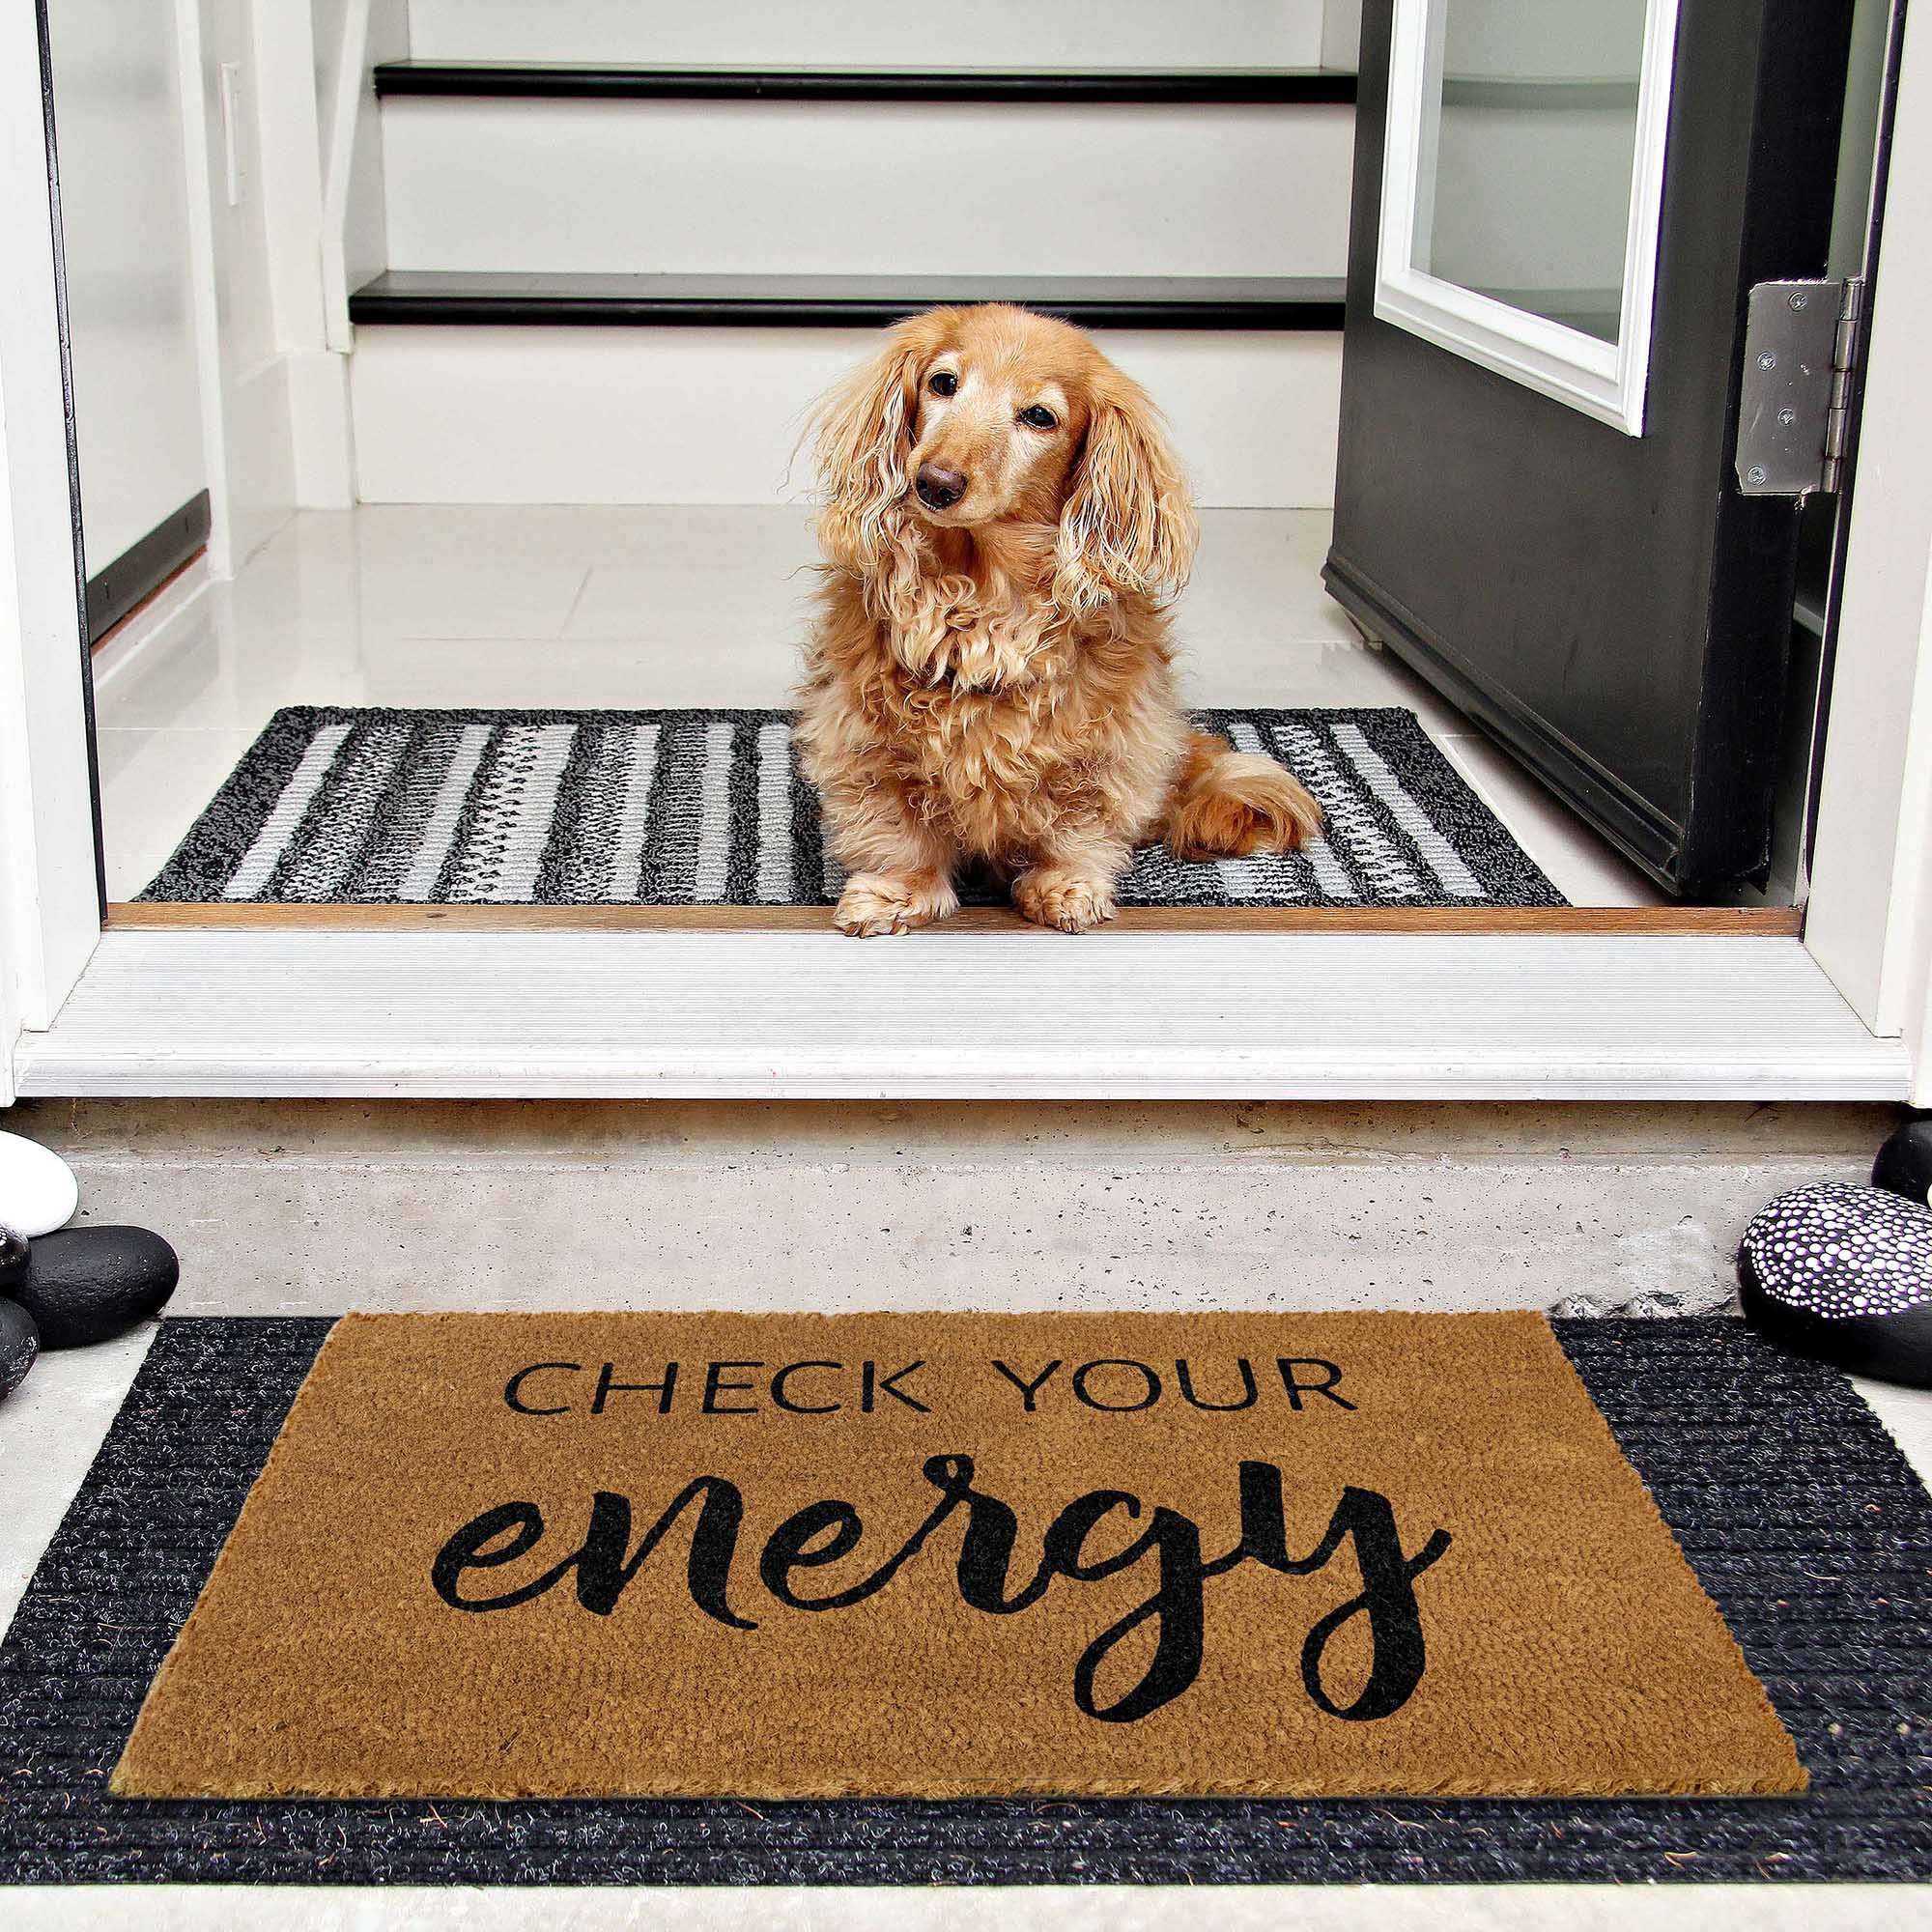 https://maineventusa.shop/cdn/shop/products/mats_checkyourenergy_LS_05_check-your-energy-doormat-outdoor-entrance-30x17-inch-funny-doormat-outdoor-doormat.jpg?v=1678780481